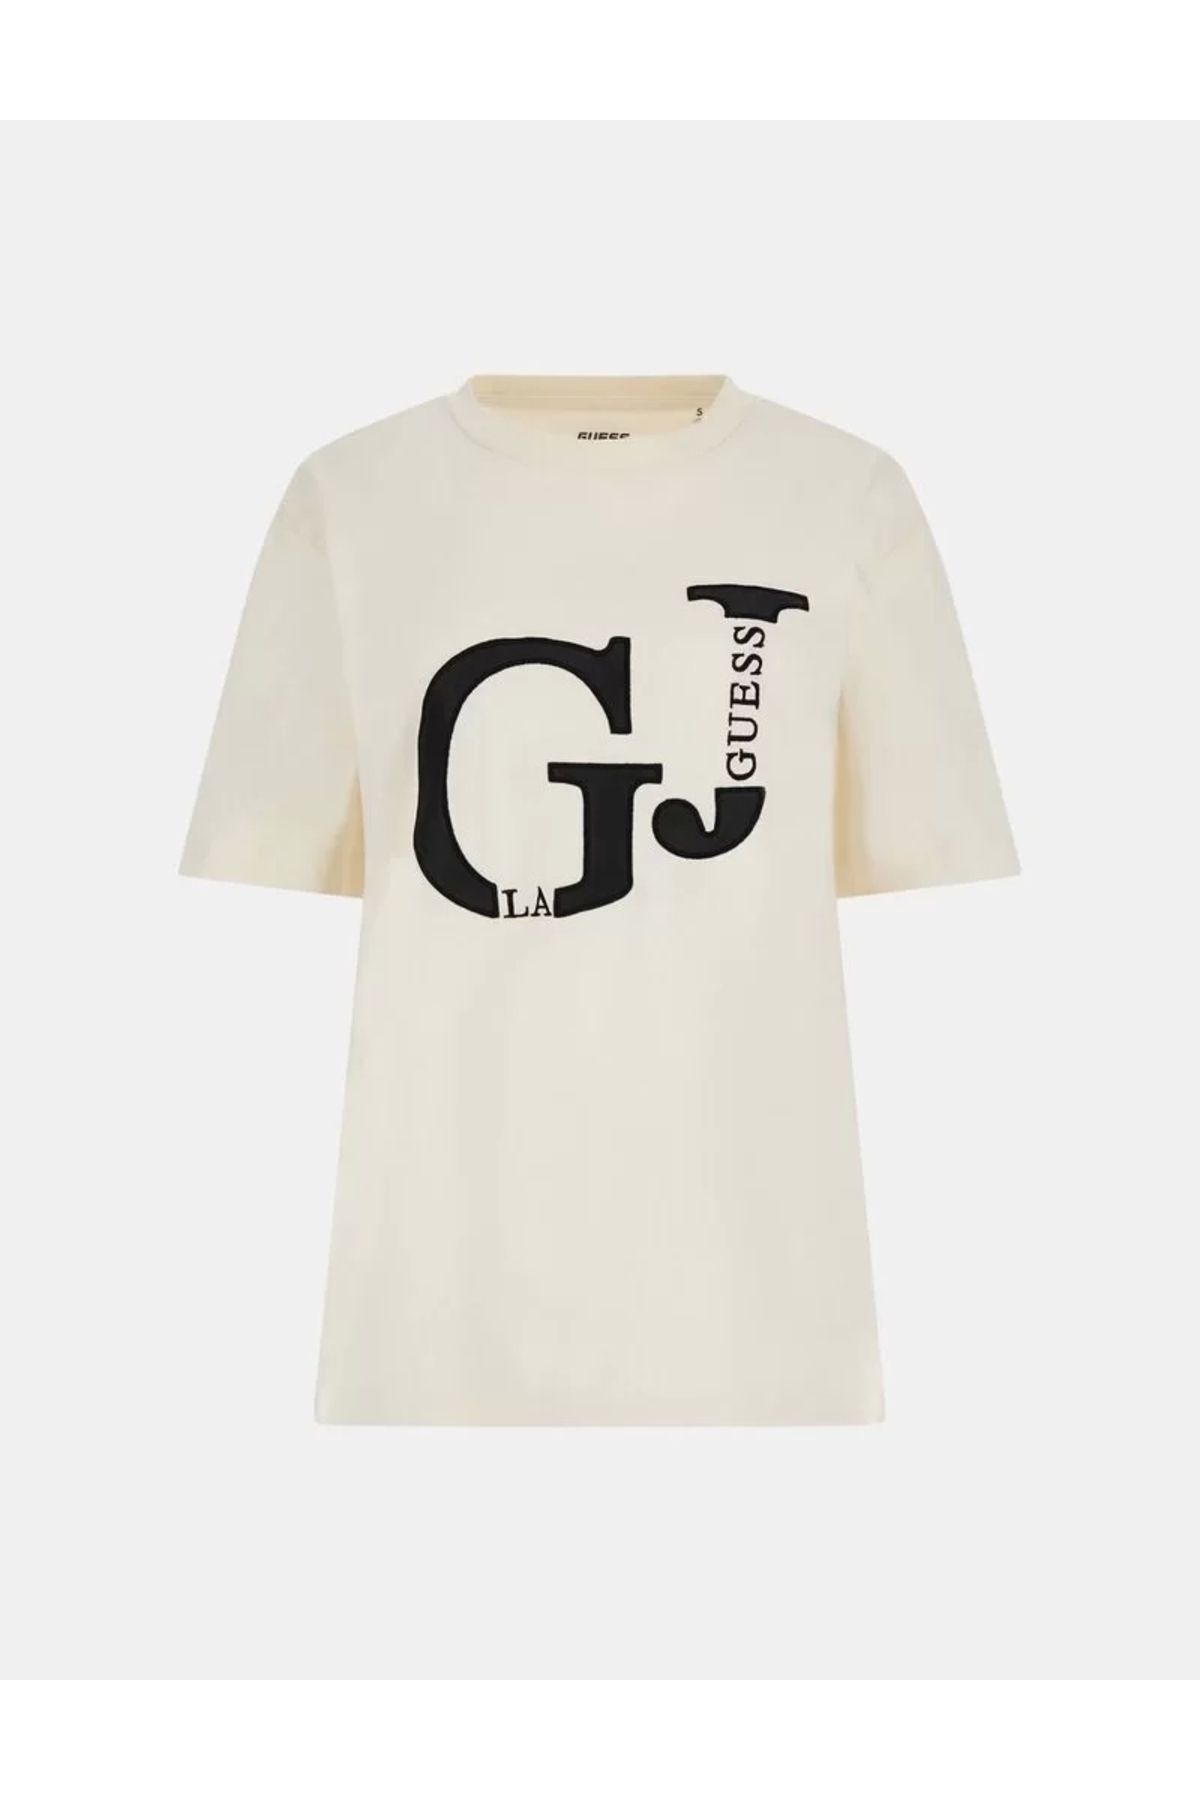 Guess Kadın Önü GJ Logolu Tişört